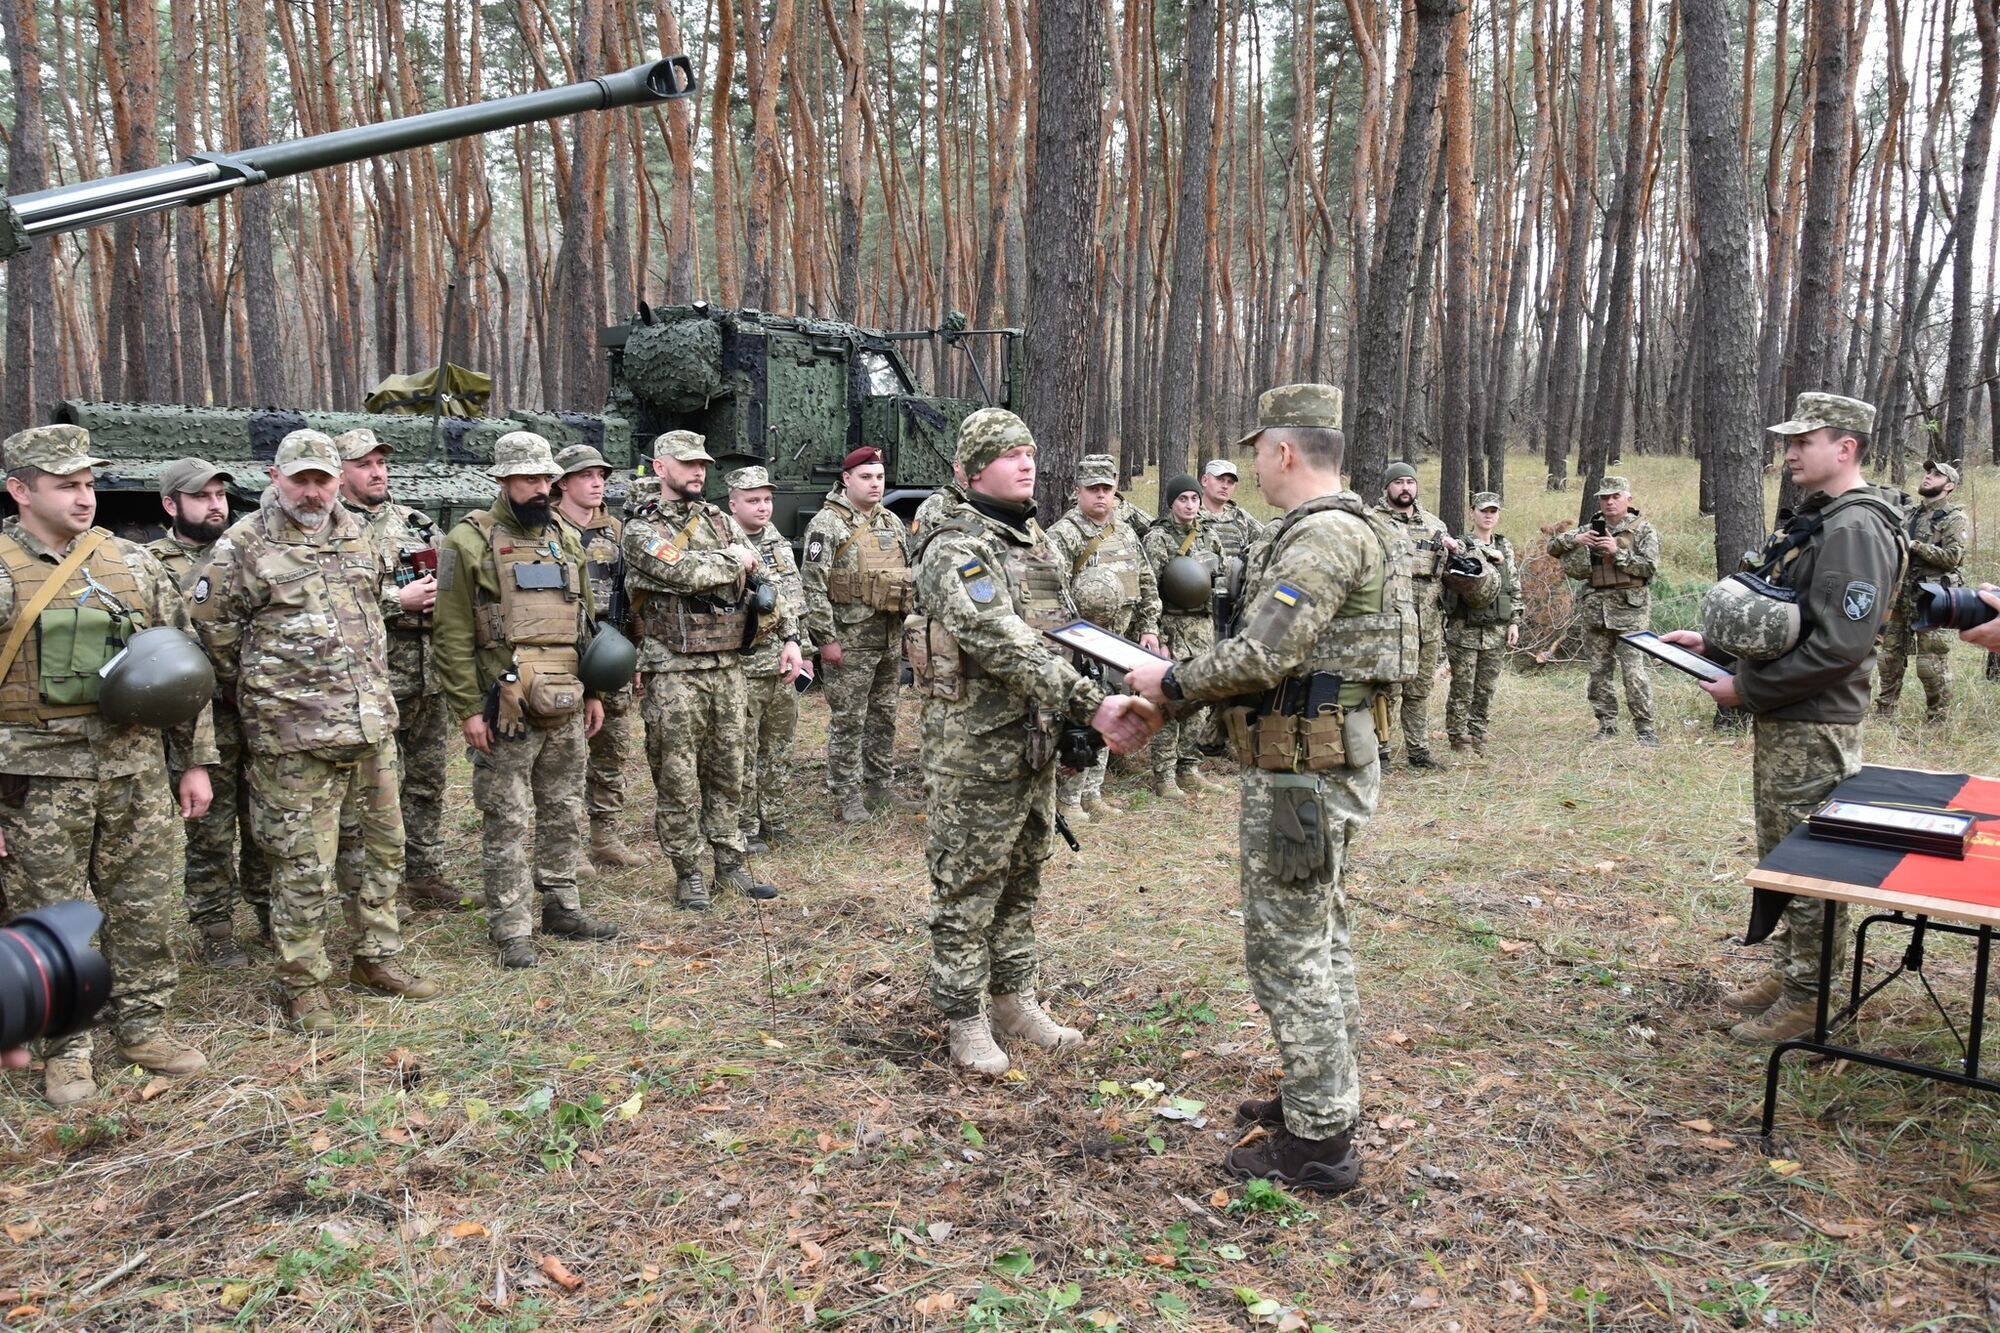 Восемь выстрелов в минуту: Швеция официально подтвердила передачу Украине САУ Archer